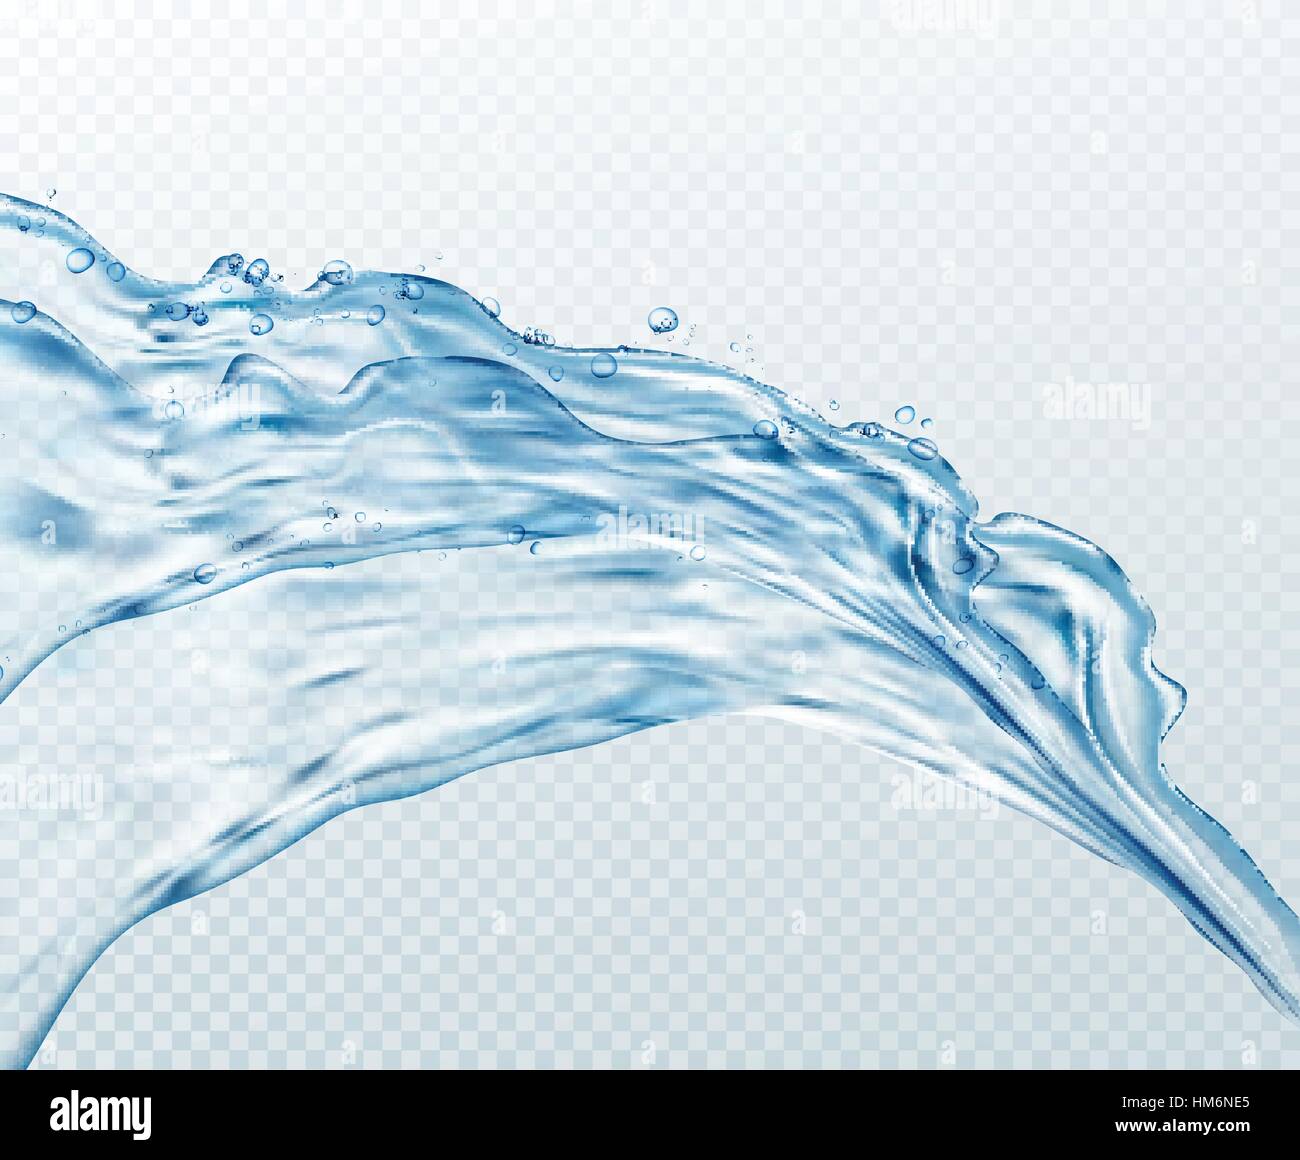 Trasparente gli spruzzi d'acqua, gocce isolato su sfondo trasparente. Illustrazione vettoriale EPS10 Illustrazione Vettoriale